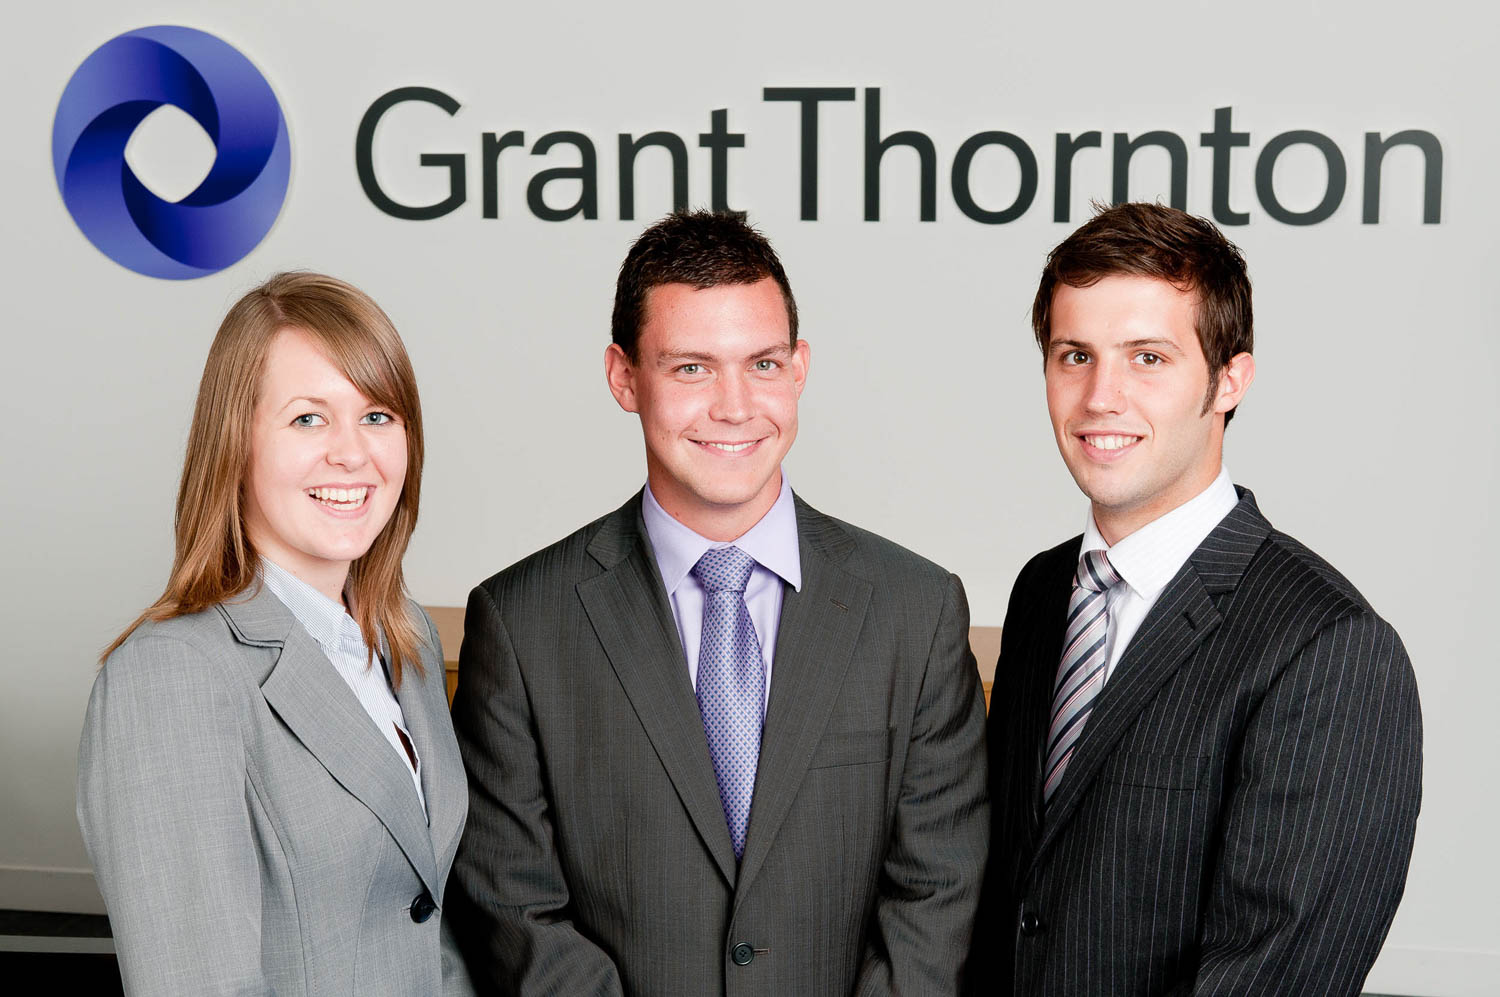 Grant Thornton graduates